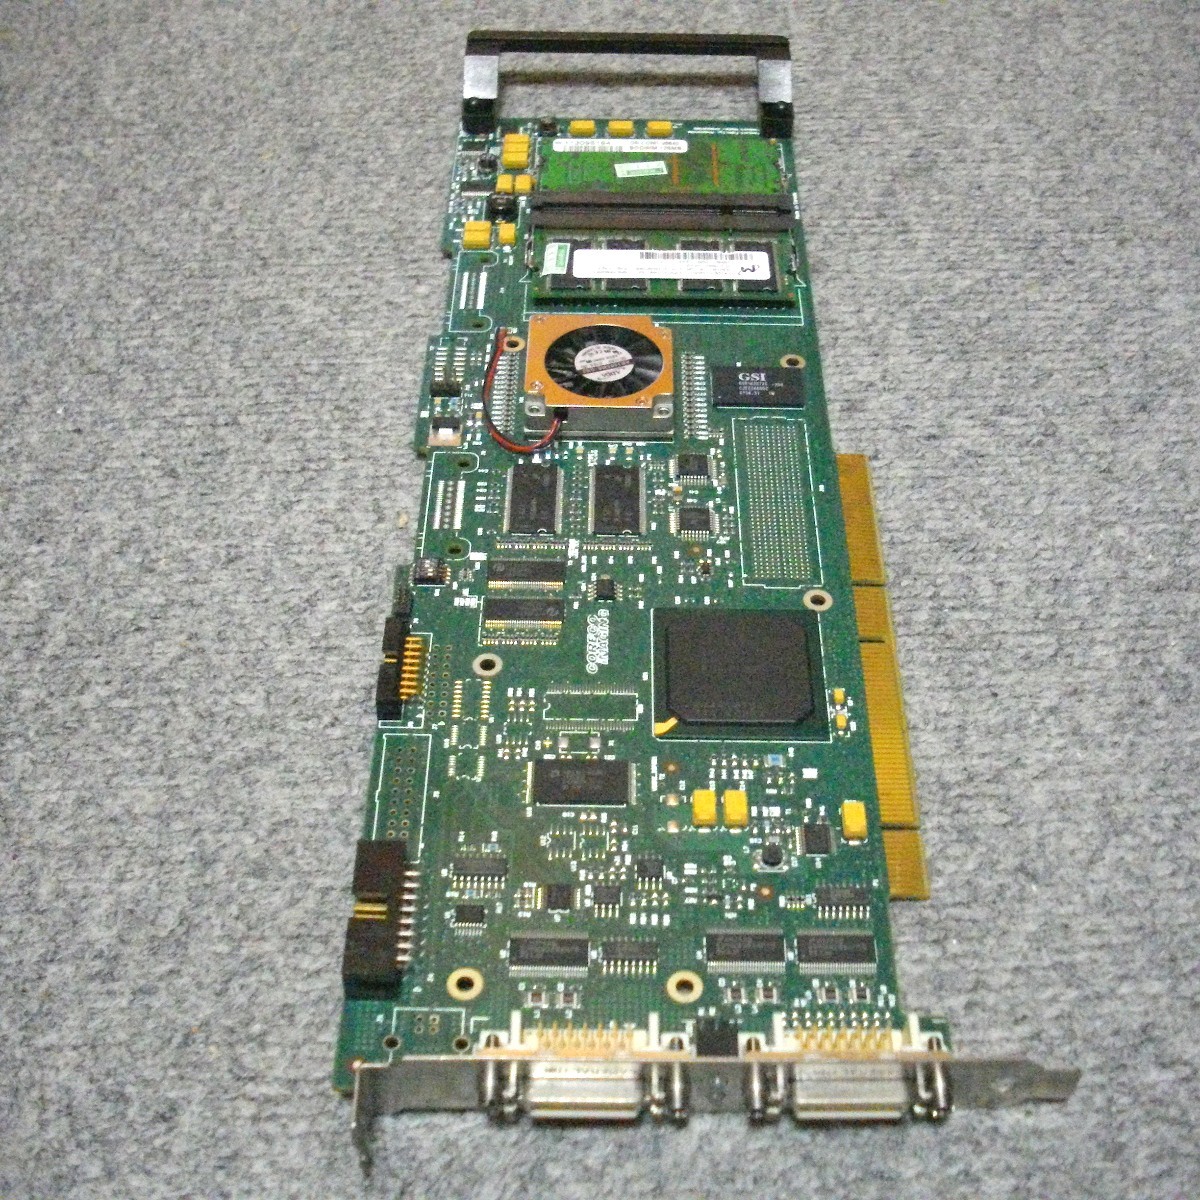 JUNK即納 デバイス認識まで確認 産業用PCI-Xボード CORECO IMAGING OC-MEDO-HOL00 CMI#243-2 1.10 BUILD 246 PCI-X